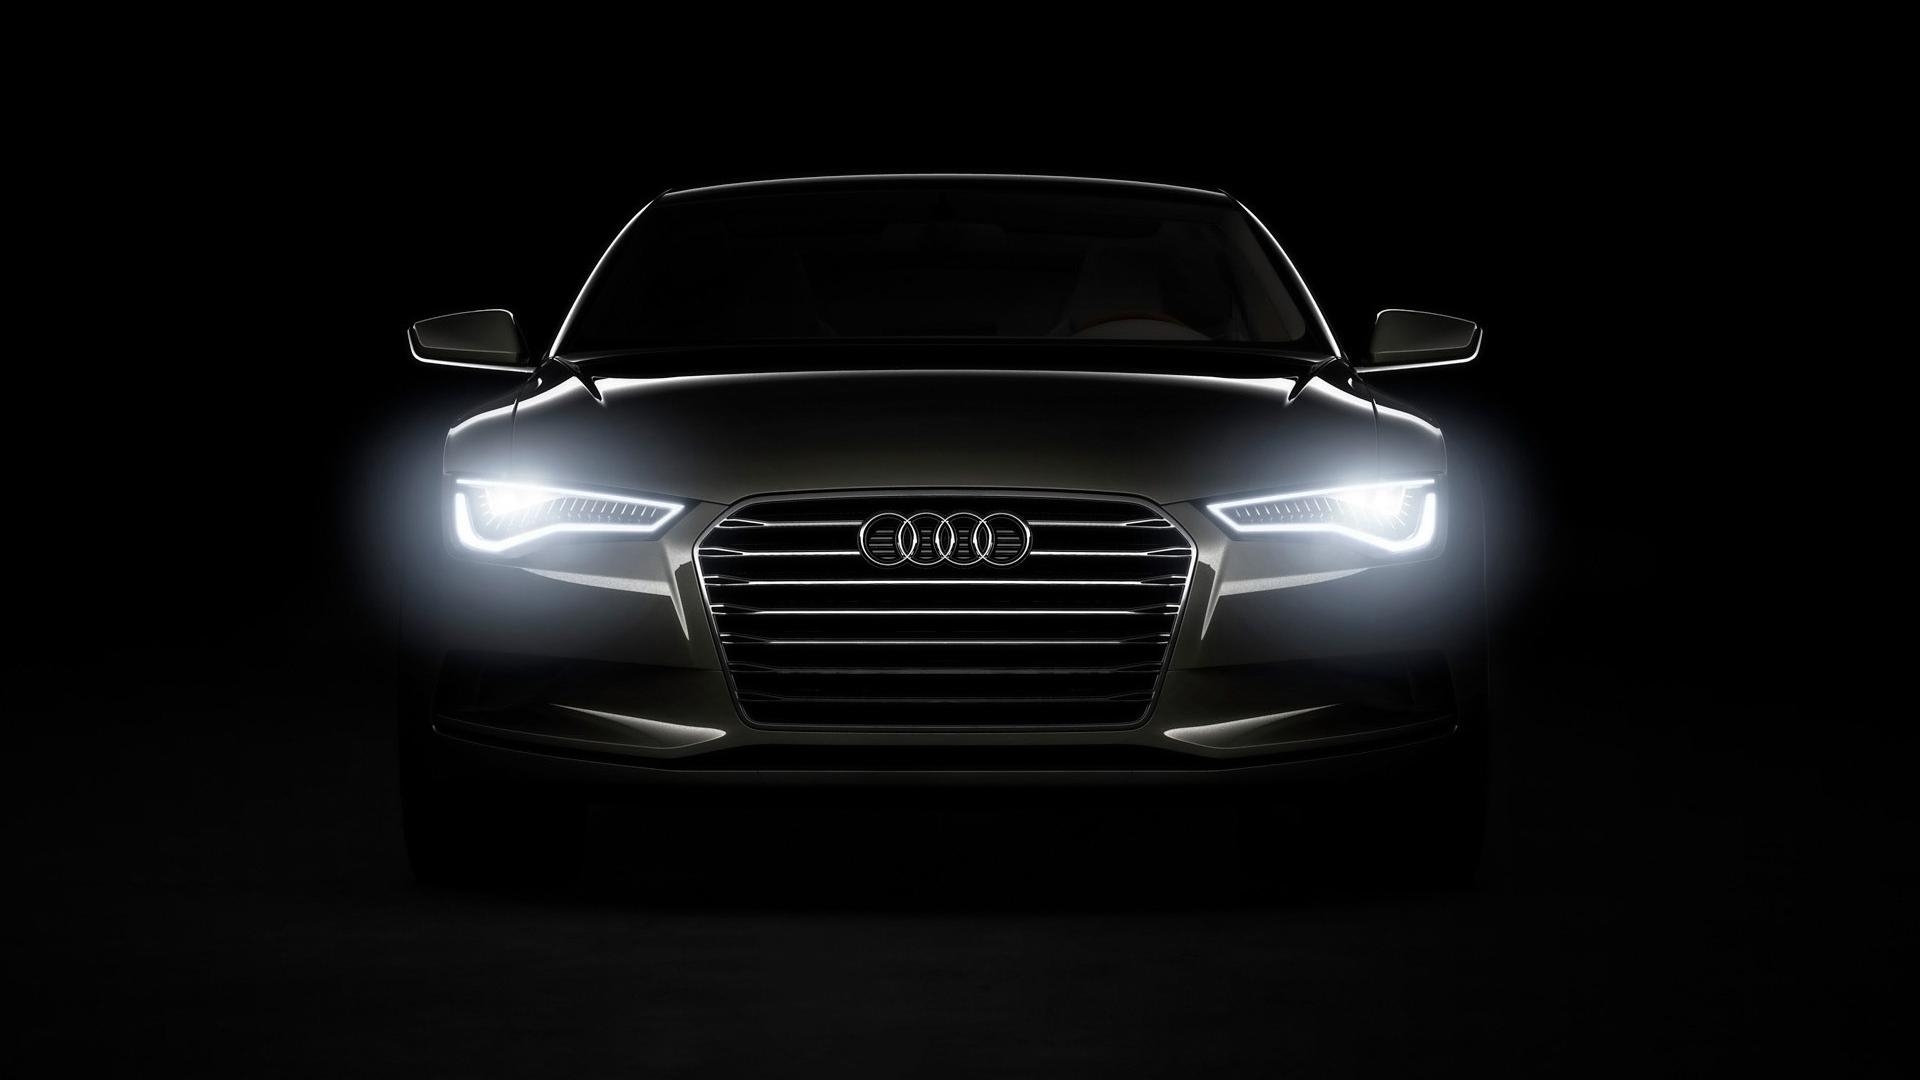 Audi HD Wallpapers 1080p - WallpaperSafari